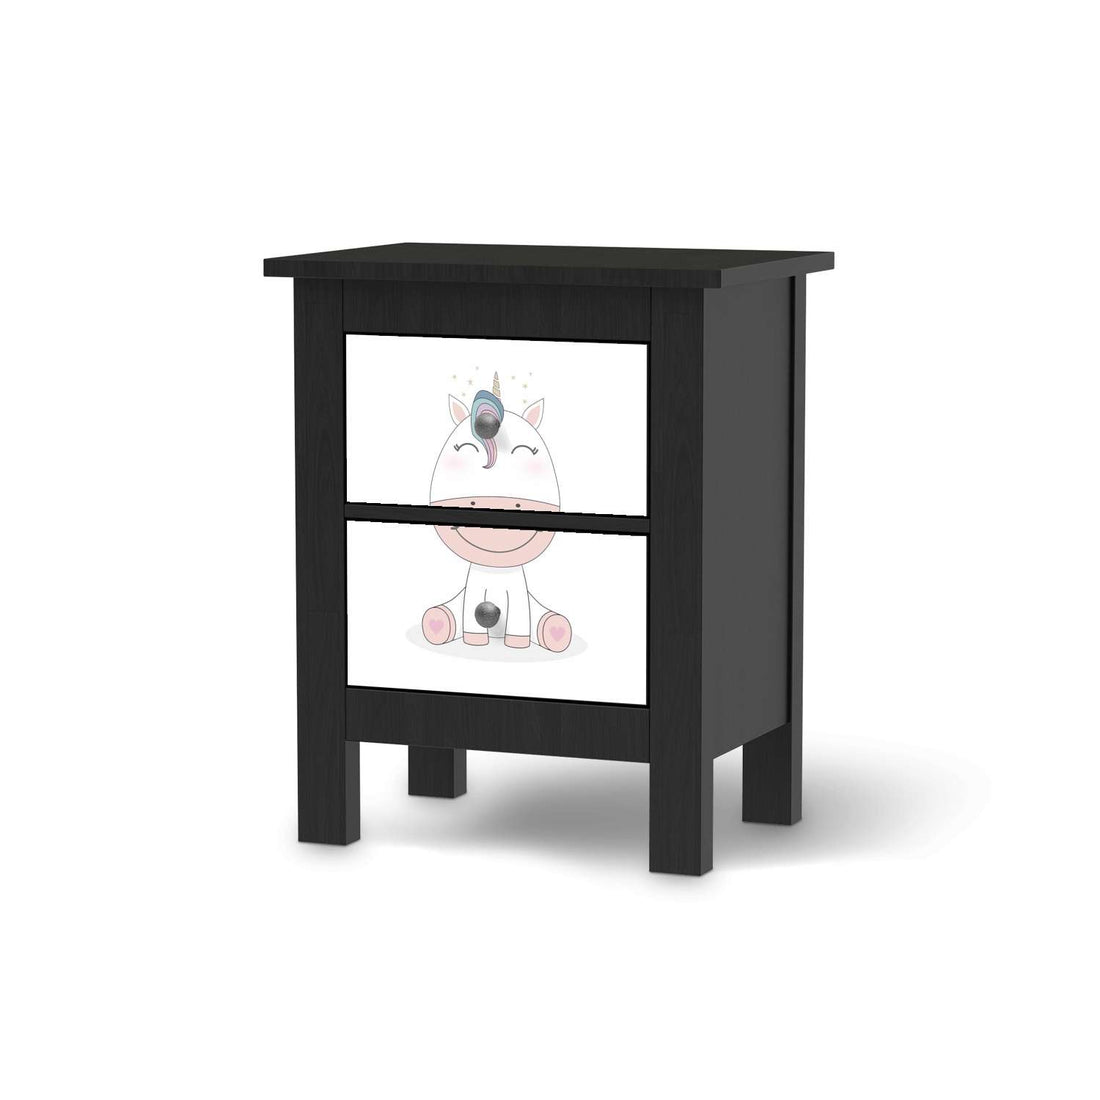 Selbstklebende Folie Baby Unicorn - IKEA Hemnes Kommode 2 Schubladen - schwarz